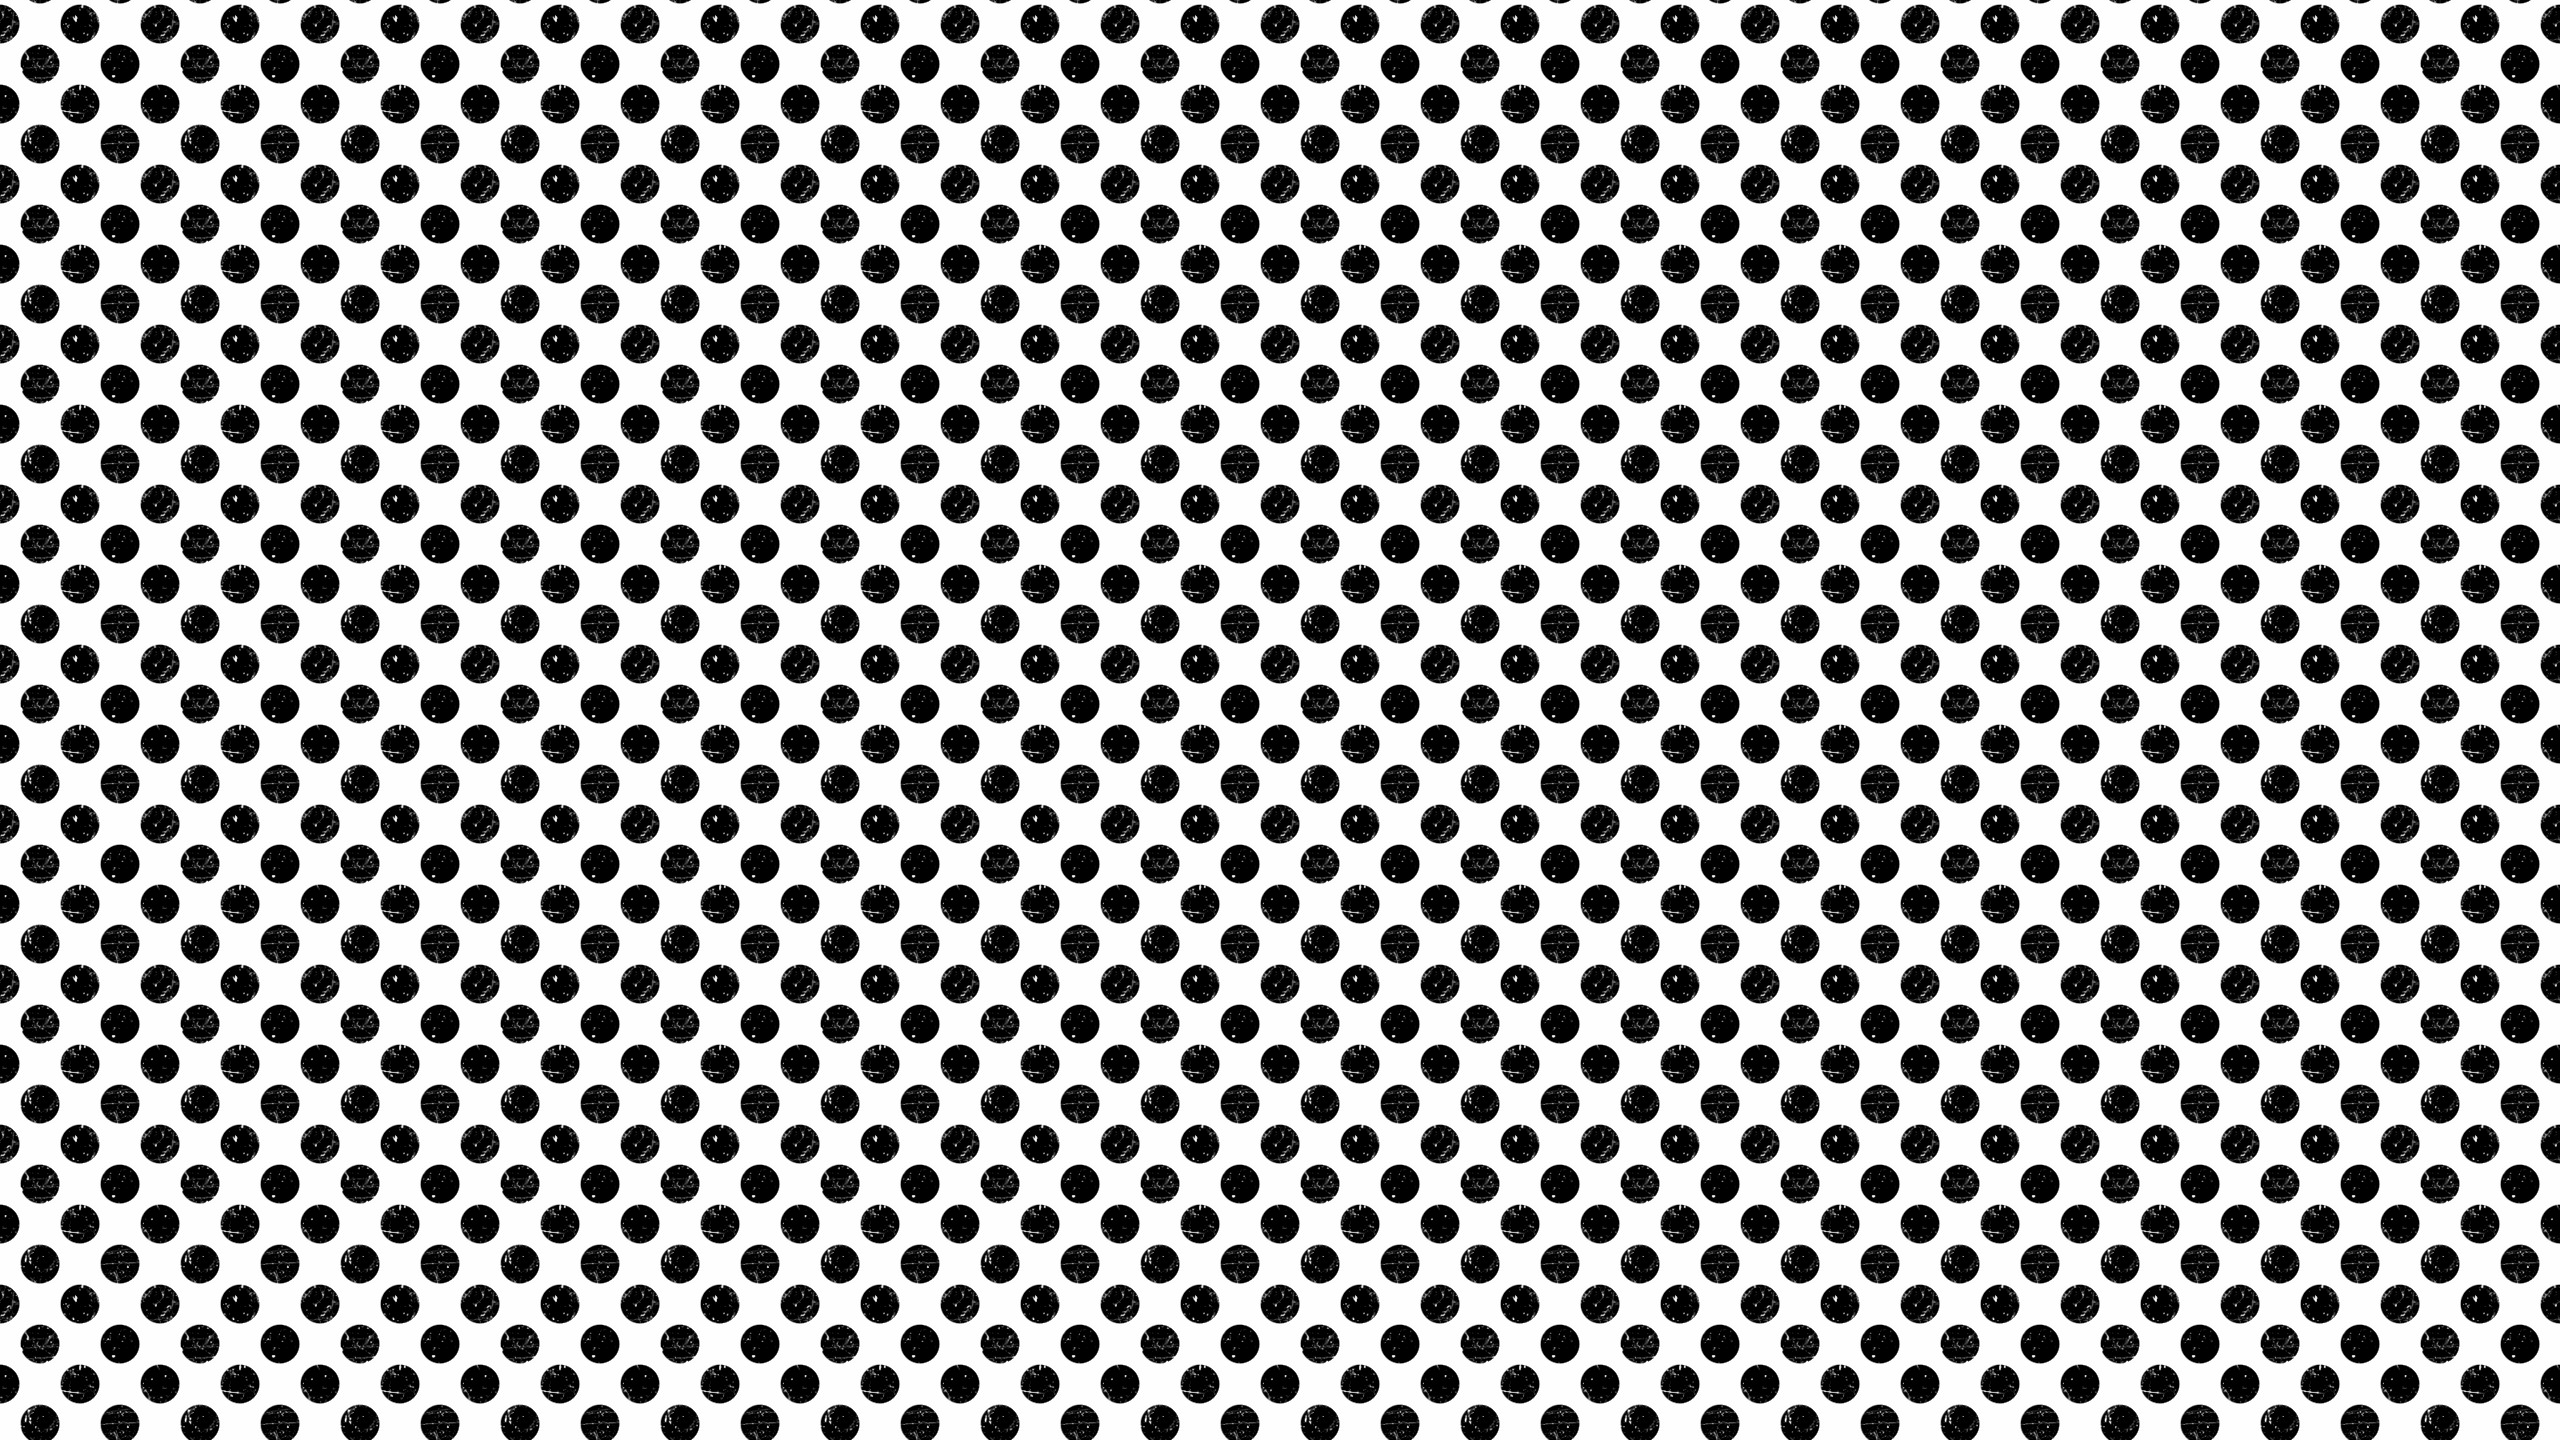 000000 trance polka dots